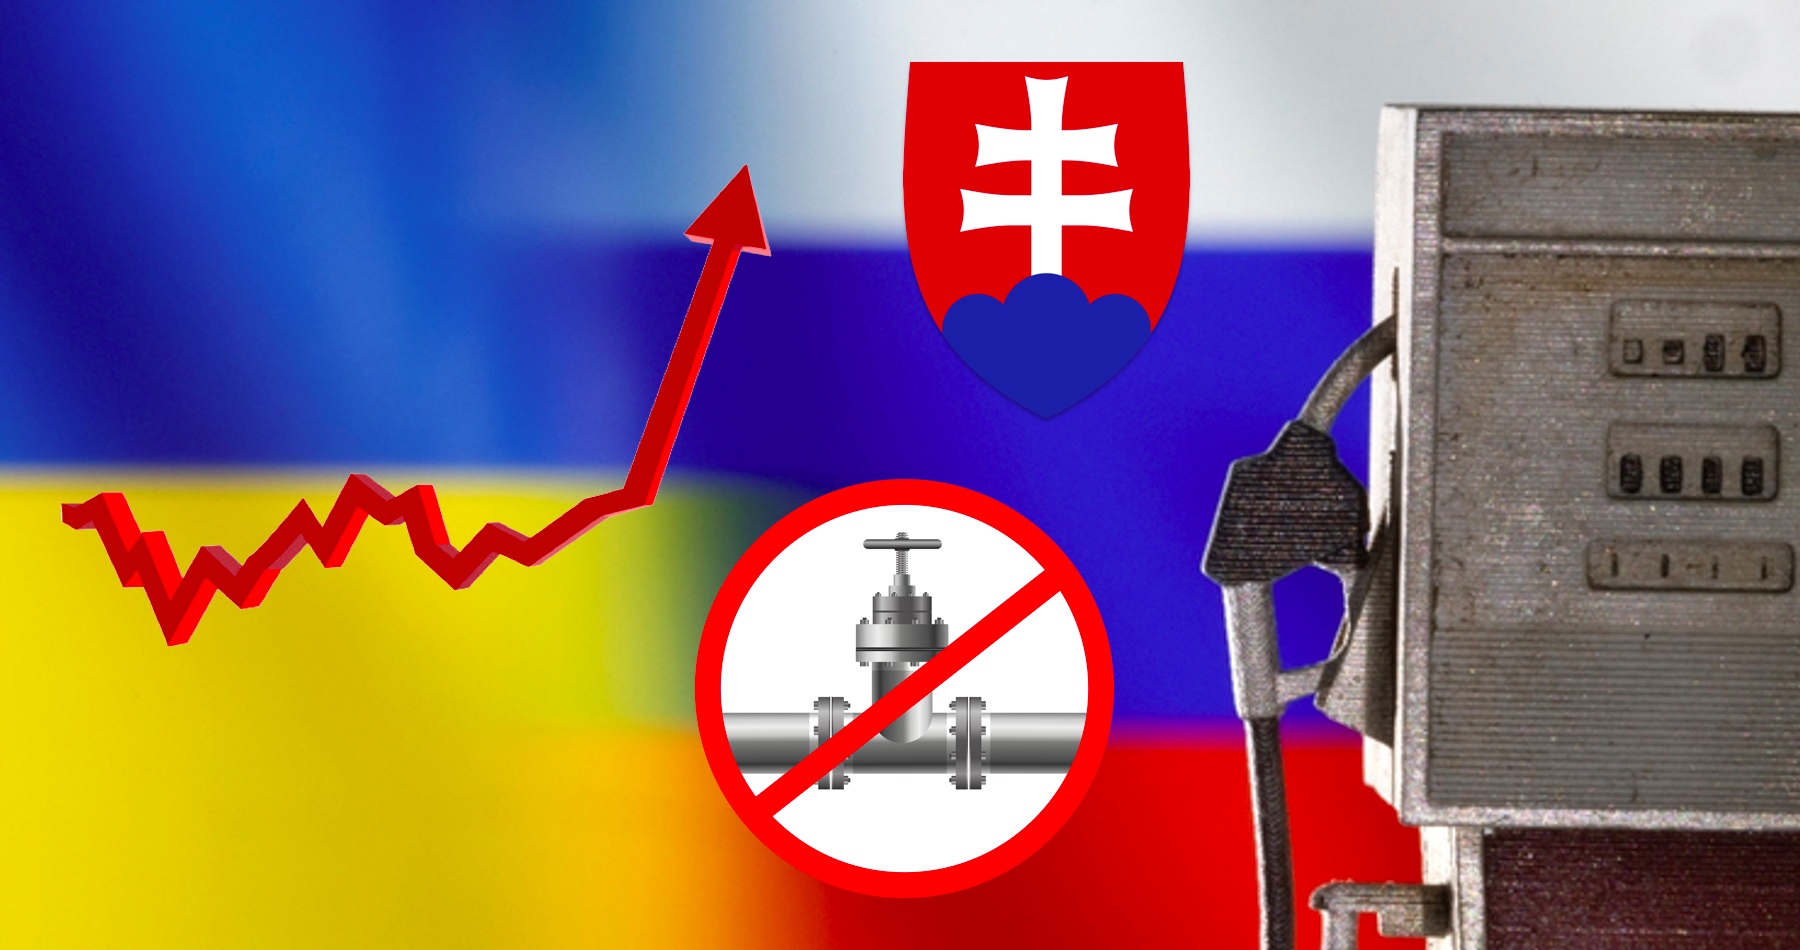 Podporovanie vojny štátmi NATO a protiruské sankcie budú mať ešte dramatickejšie dopady na ekonomiku. Najväčšia americká banka JP Morgan predpovedá ceny benzínu na úrovni 3,5 eura za liter